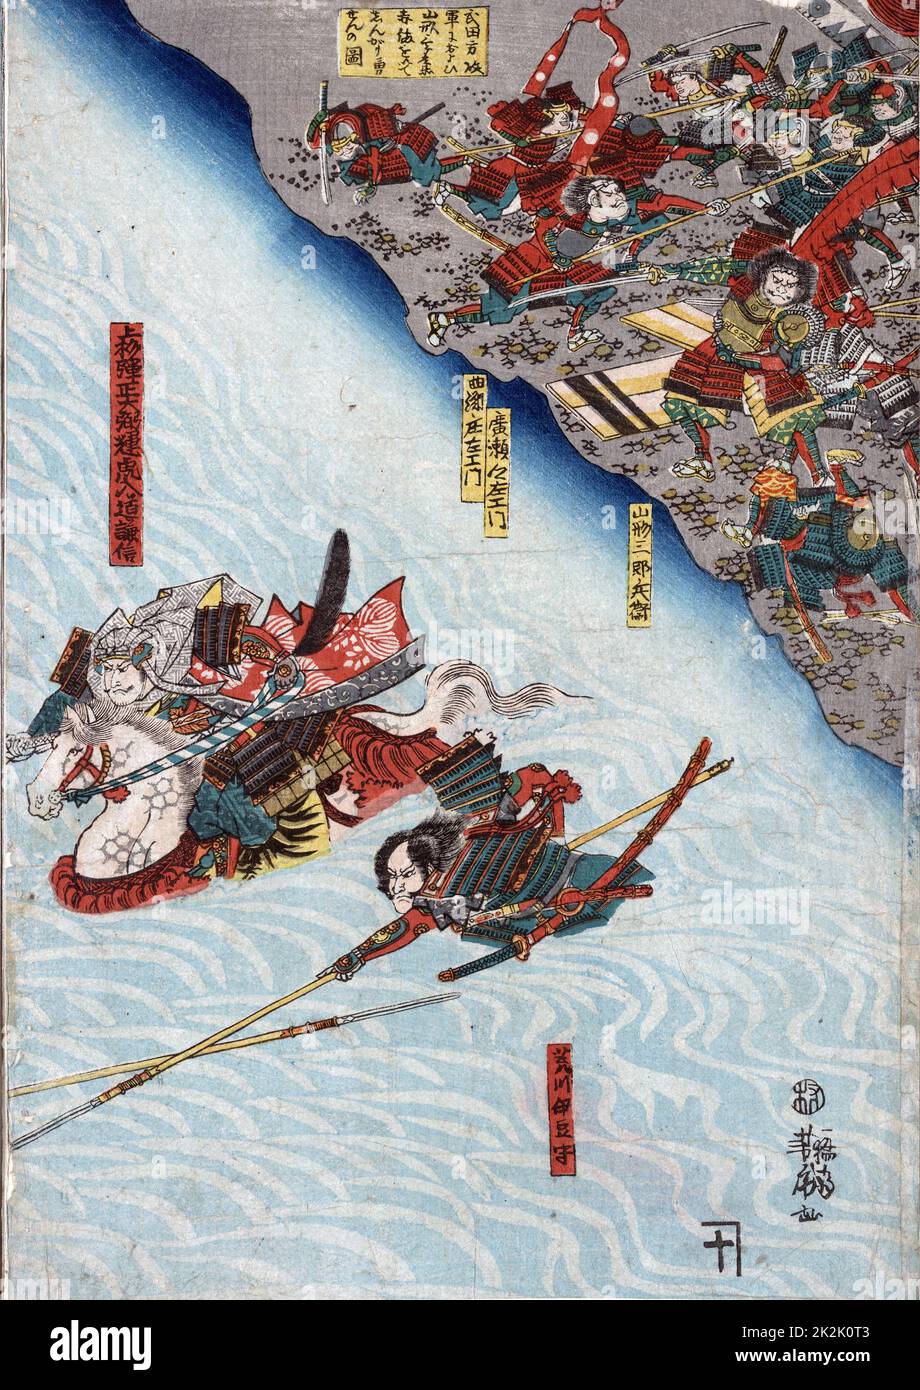 Die grosse Schlacht von Shinsu Kawanakjima in: Wahrscheinlich der 1561 vierte Schlacht zwischen den Warlords Takeda Shingen und Uesugi Keushin auf den Ebenen der Chikmu River. Utagawa Yoshitoro (1850-1870), japanischer Künstler. Stockfoto